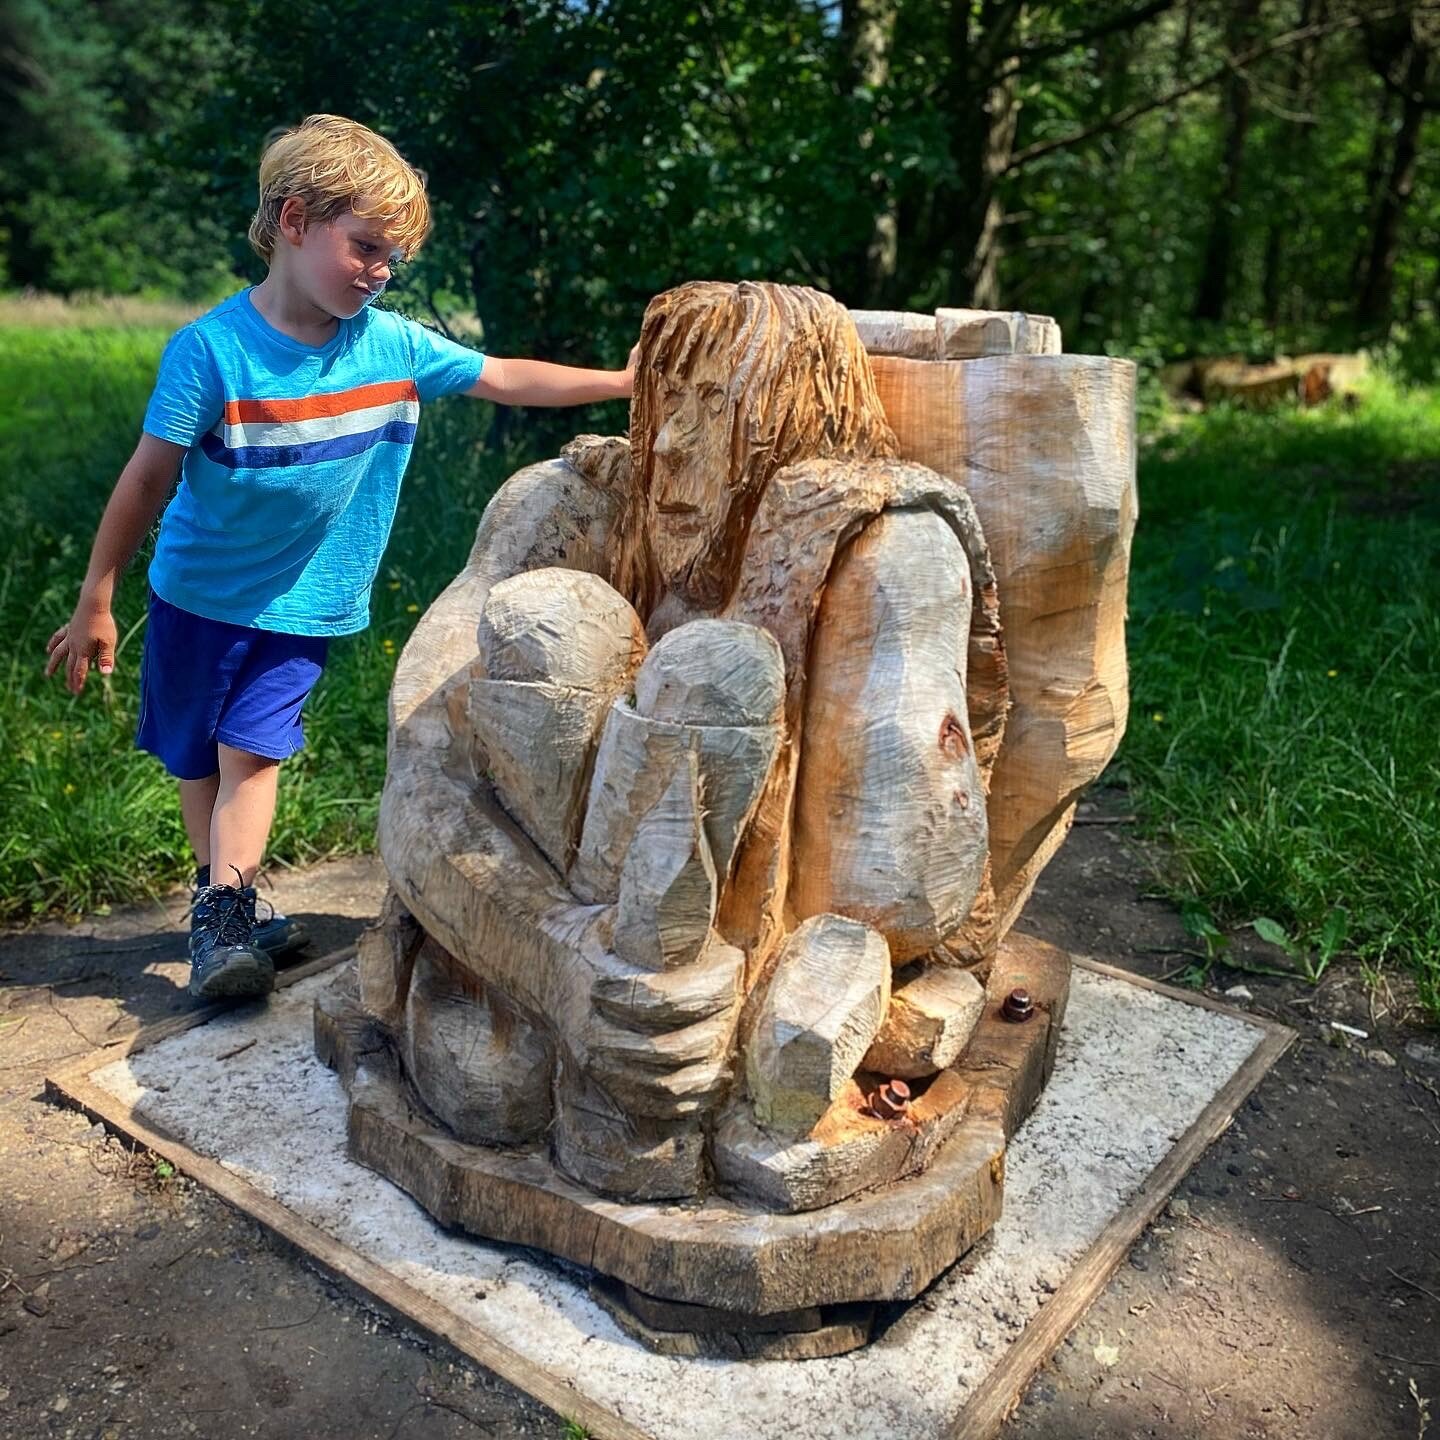 Otley Chevin Sculpture Trail 2.jpg